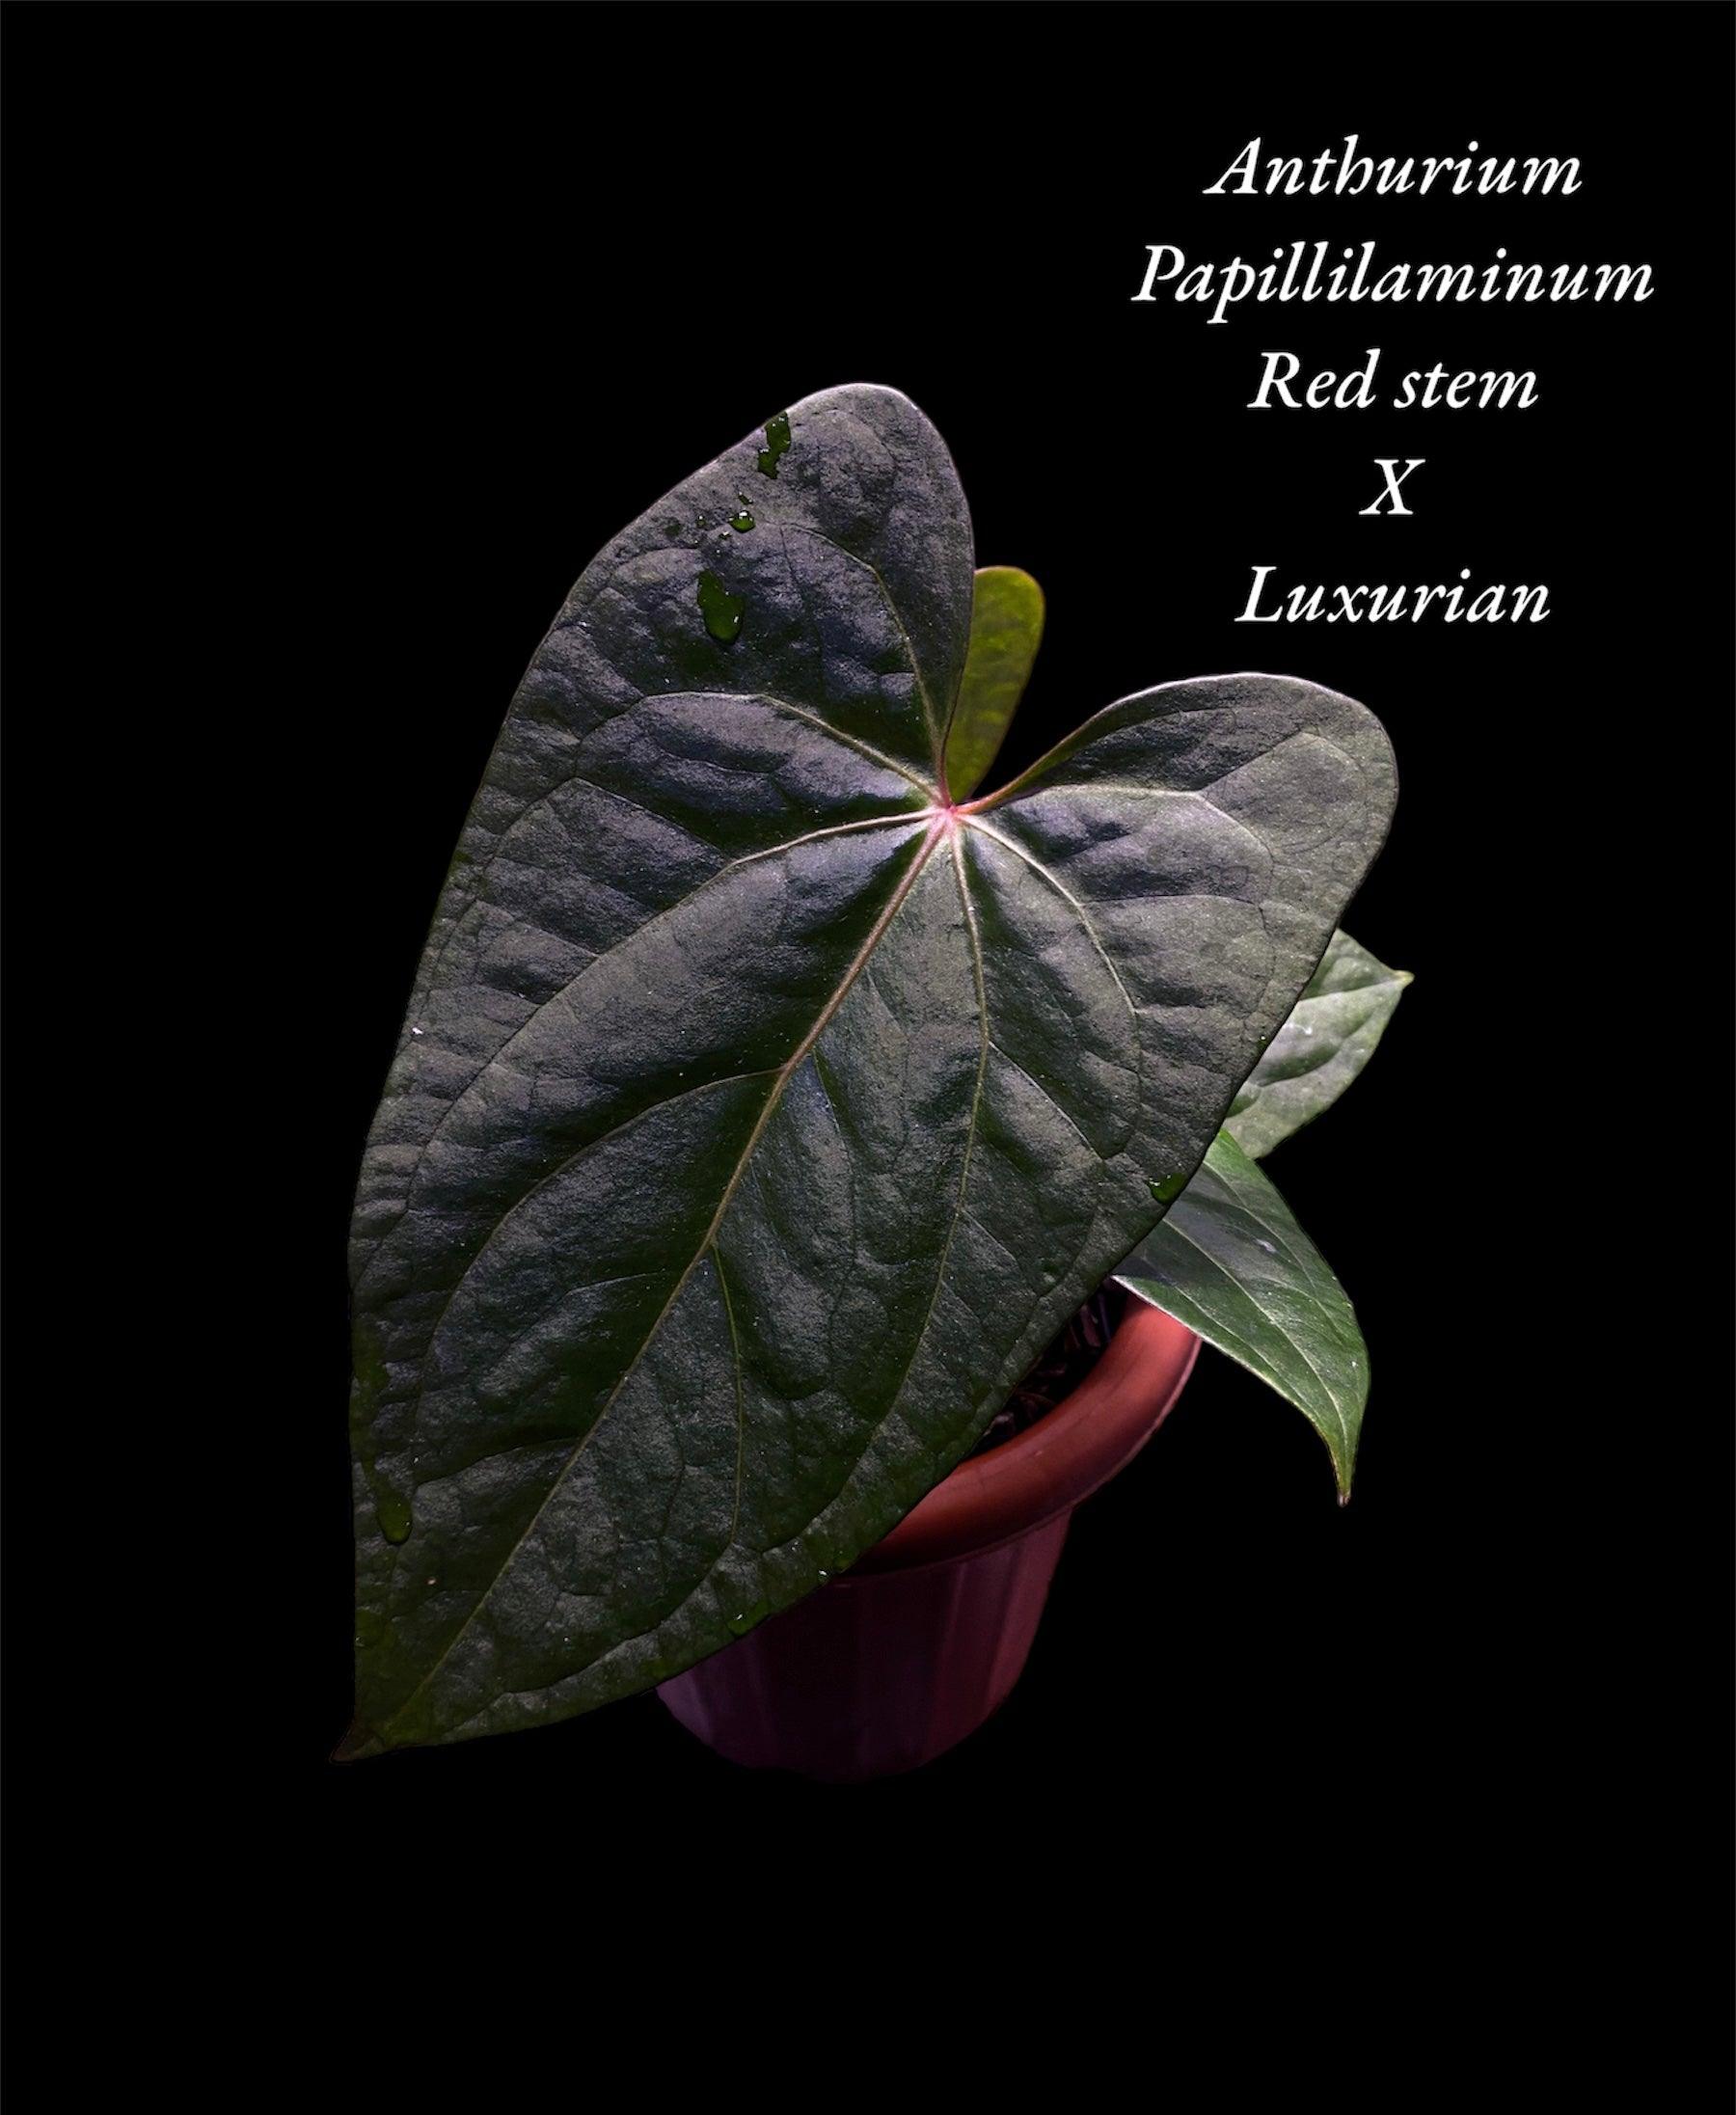 Anthurium papillilaminum x Luxurian - Indonesia Plant